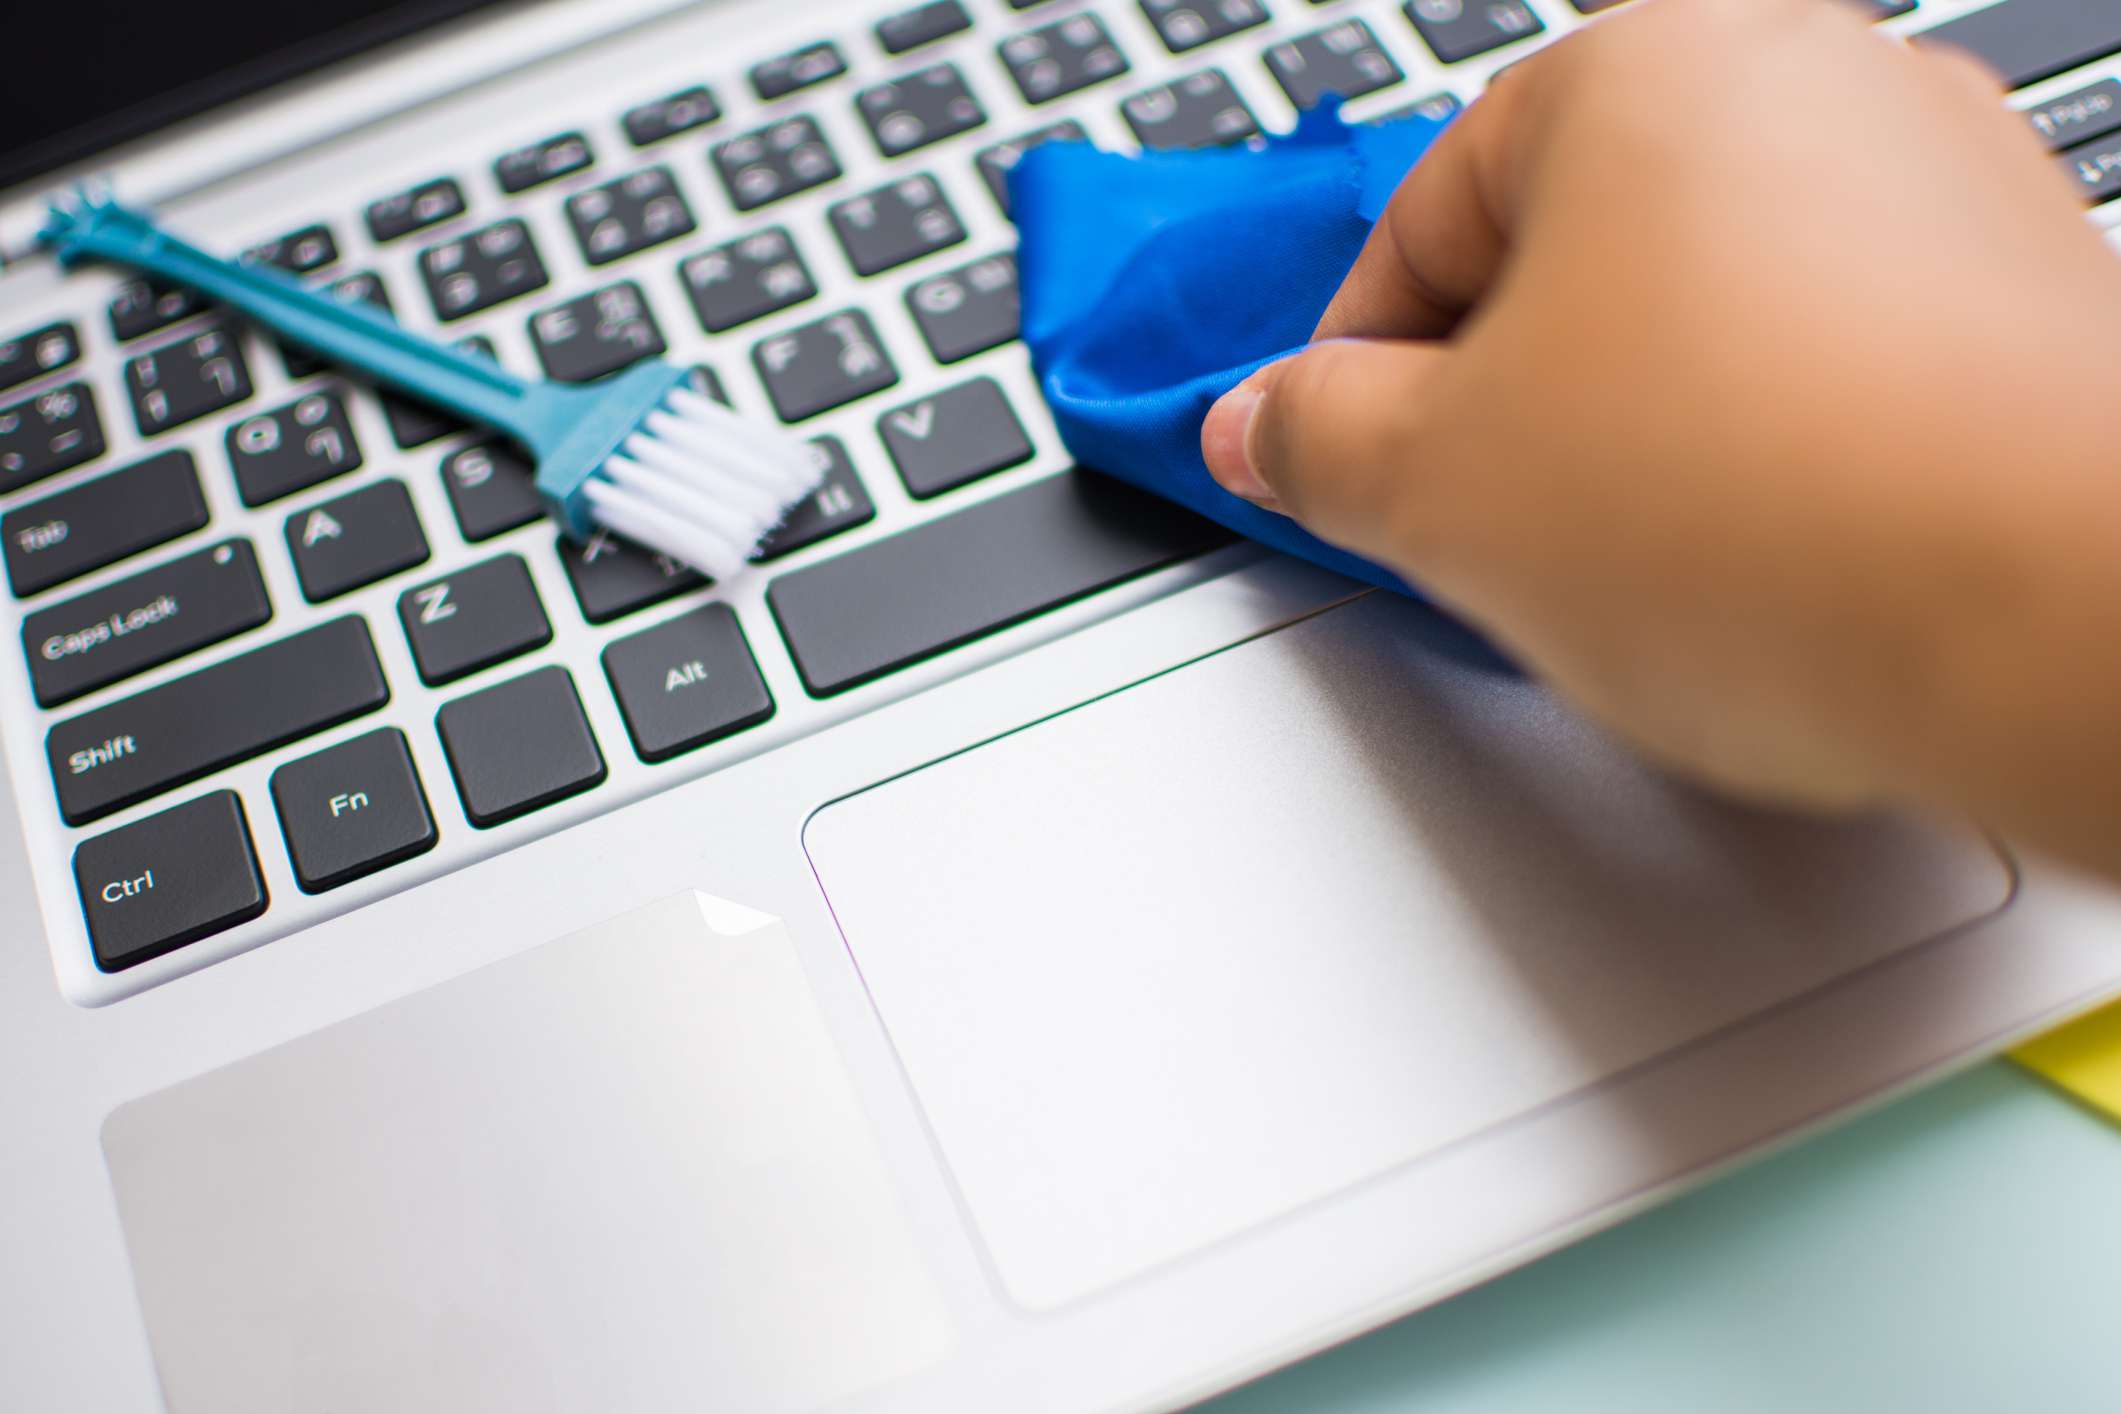 Een persoon die een blauwe doek over een laptoptoetsenbord veegt met een kleine borstel in de buurt